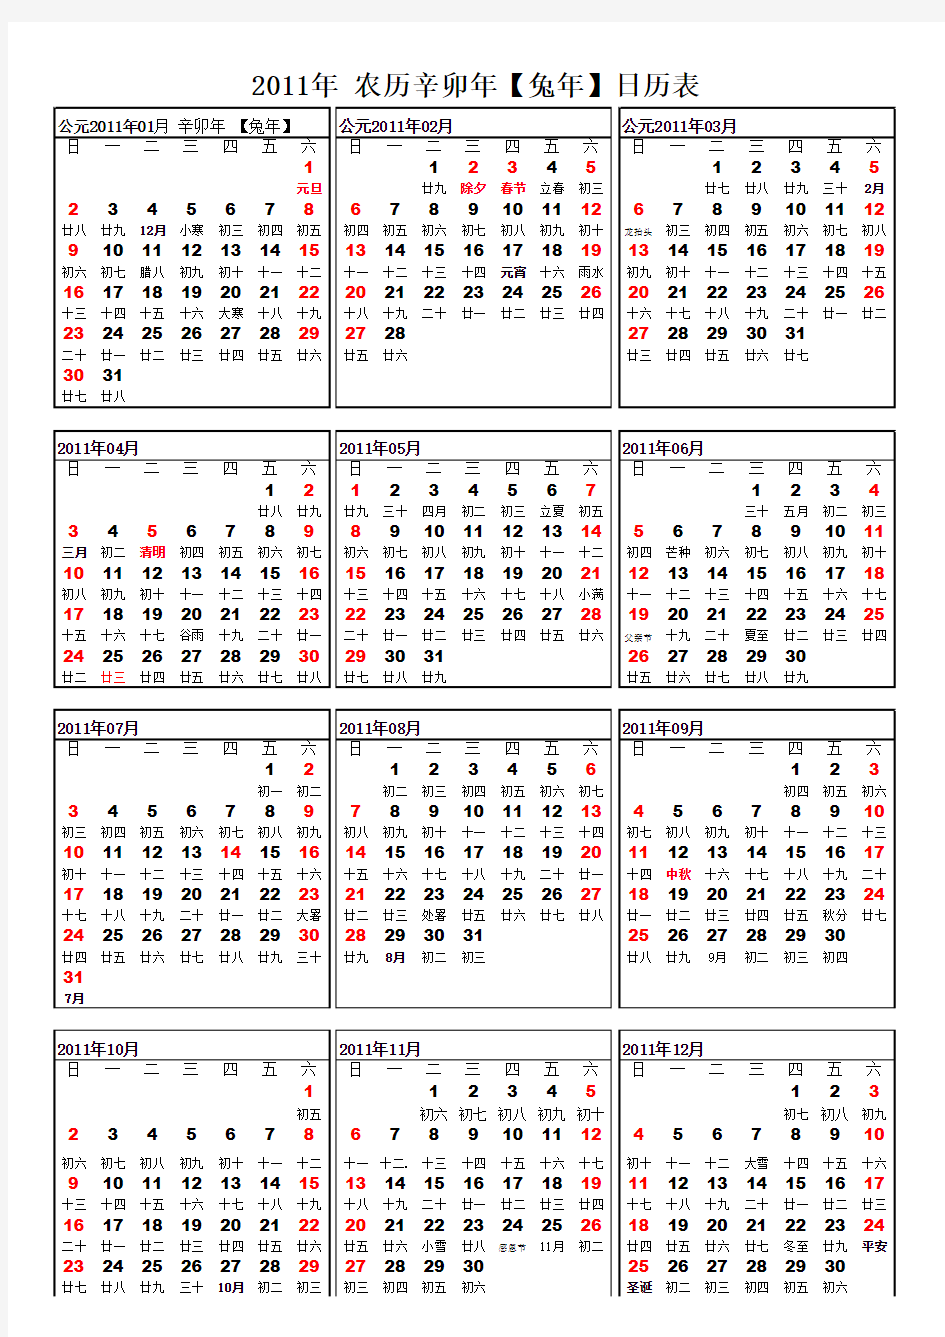 2011年全年日历年历表打印版竖版(含节气节假日,A4一张纸搞定)